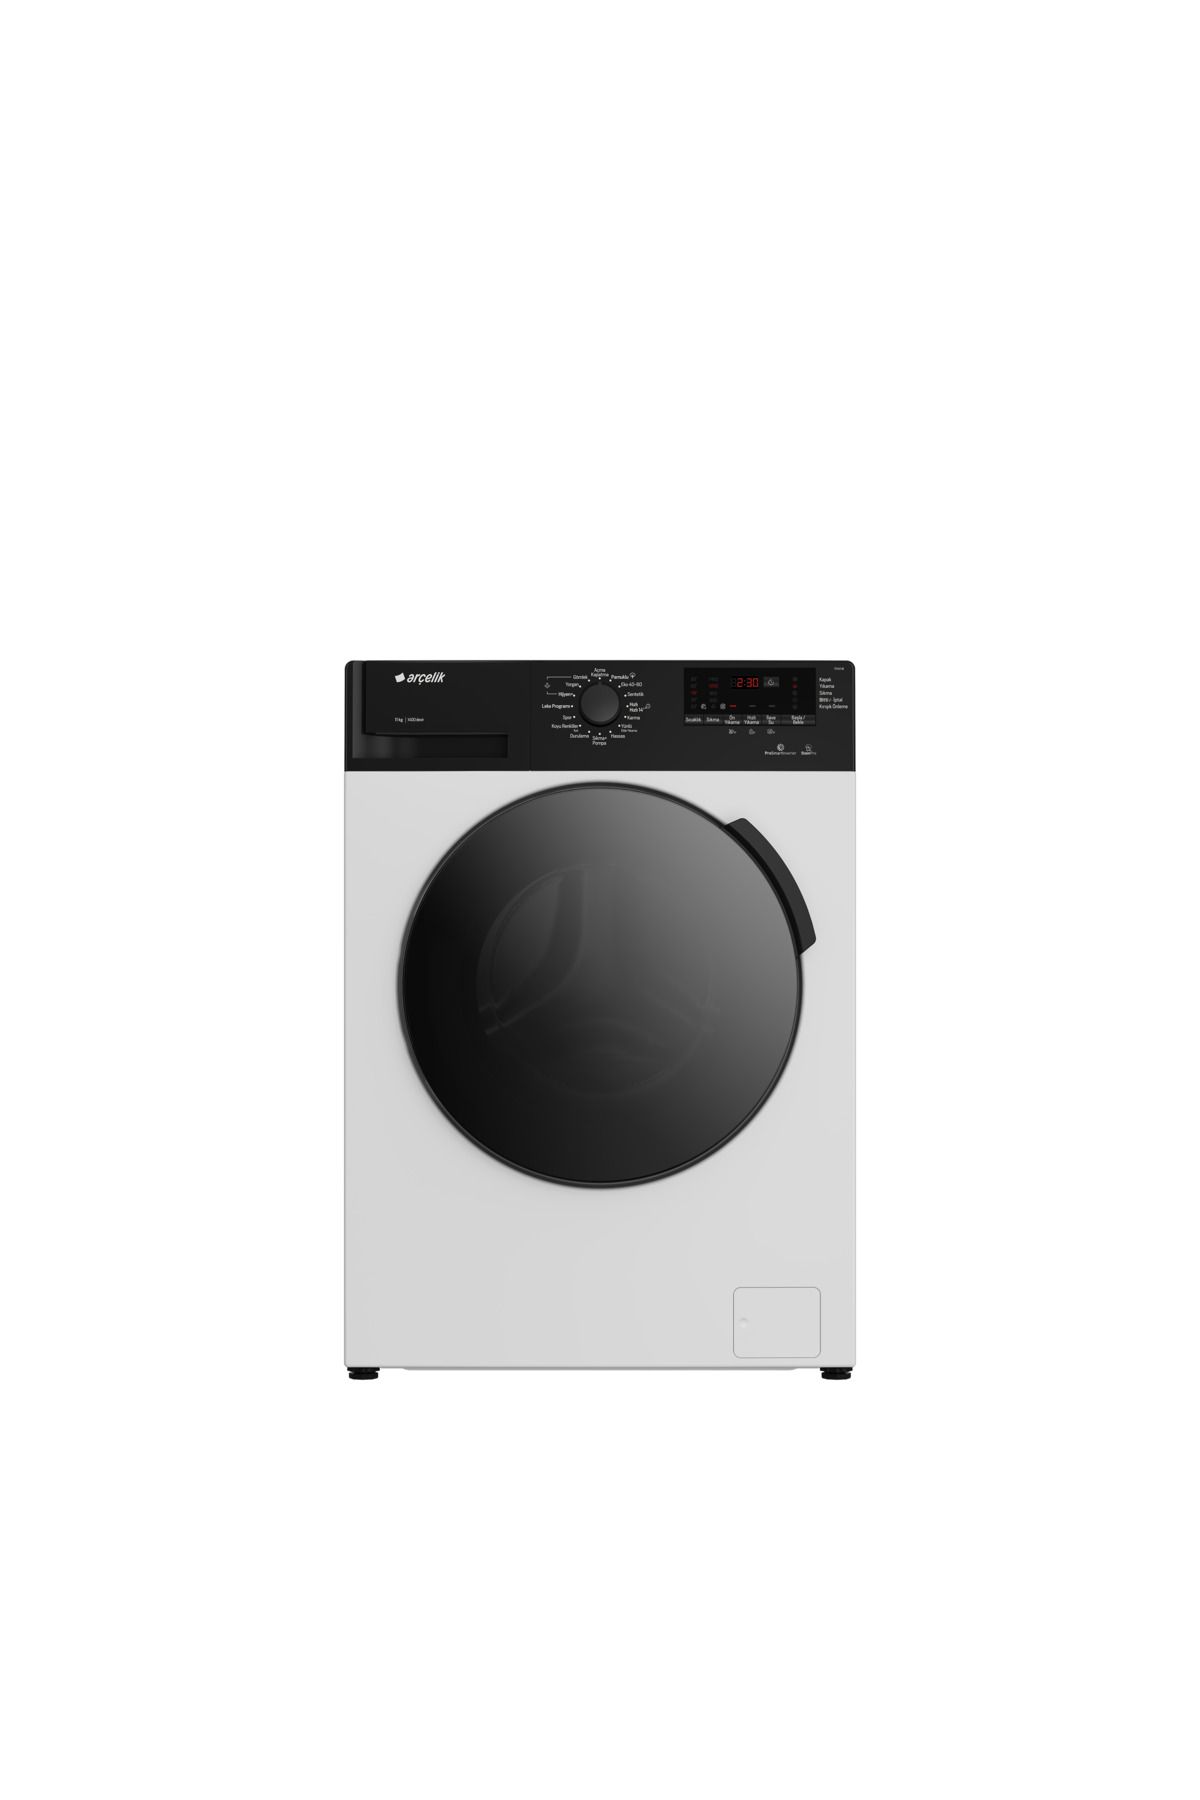 Arçelik çamaşır Makinesi Arçelik kurutma makinesi resmi gönderilecektir